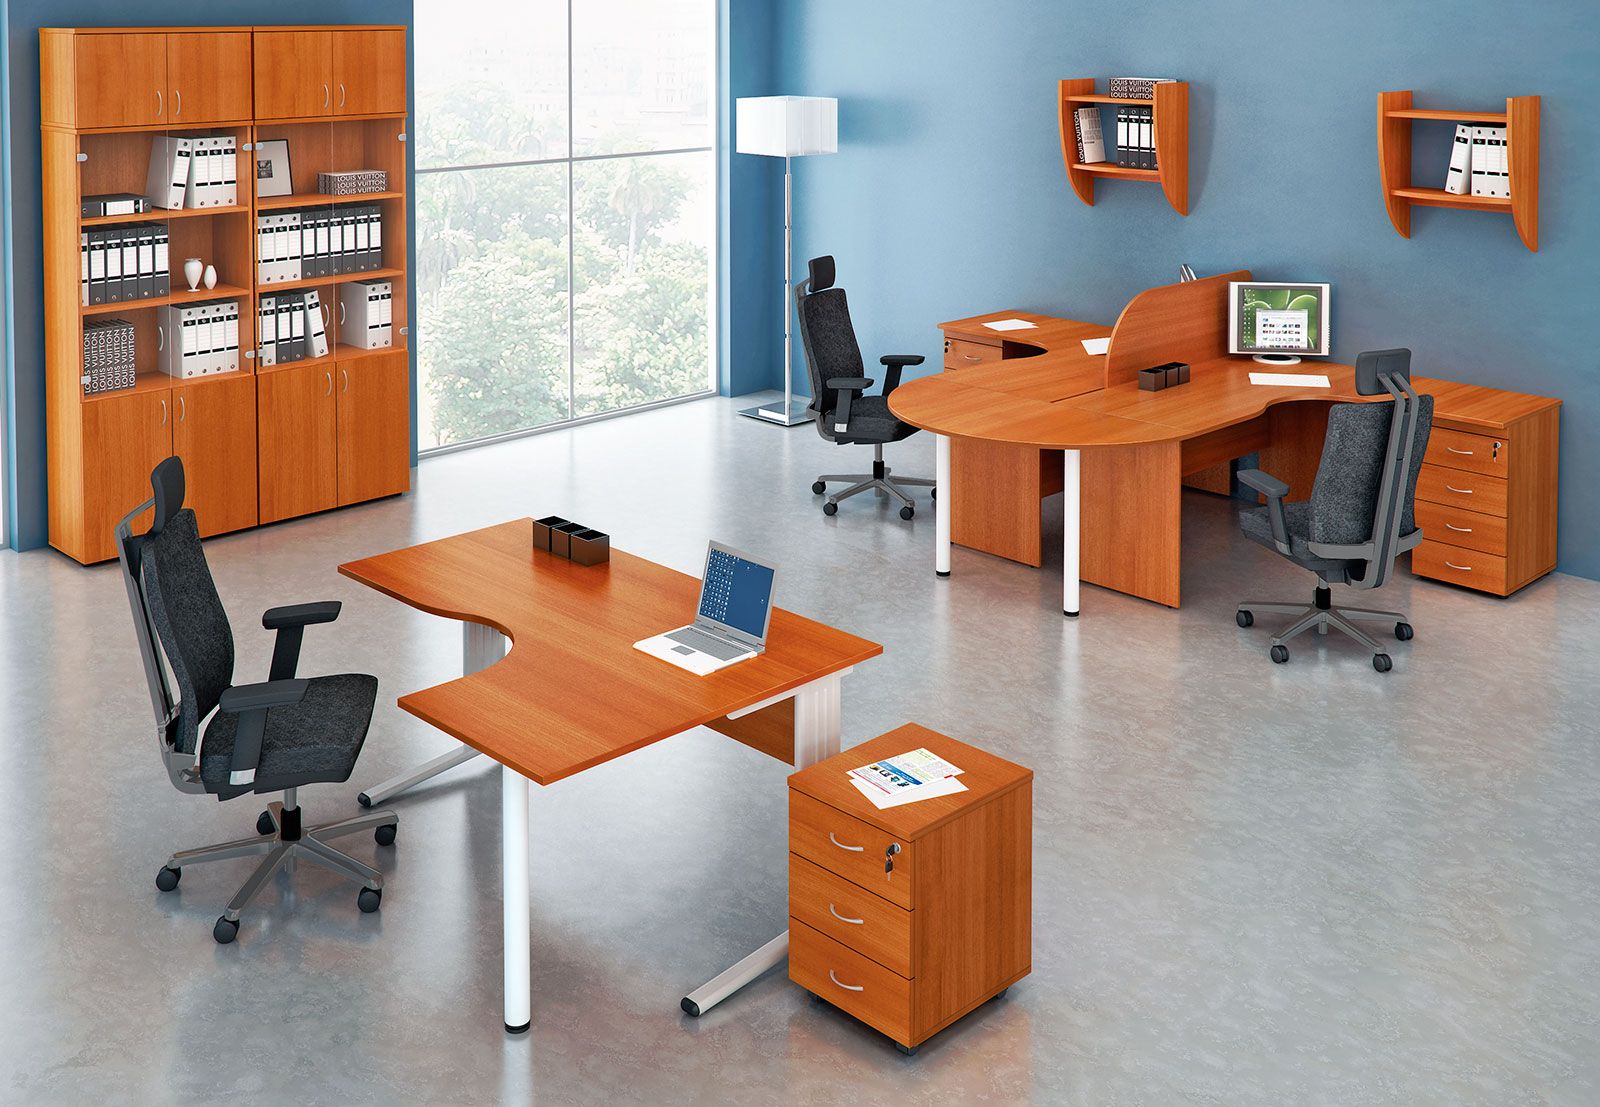 Характеристики и виды офисной мебели | дизайн интерьера